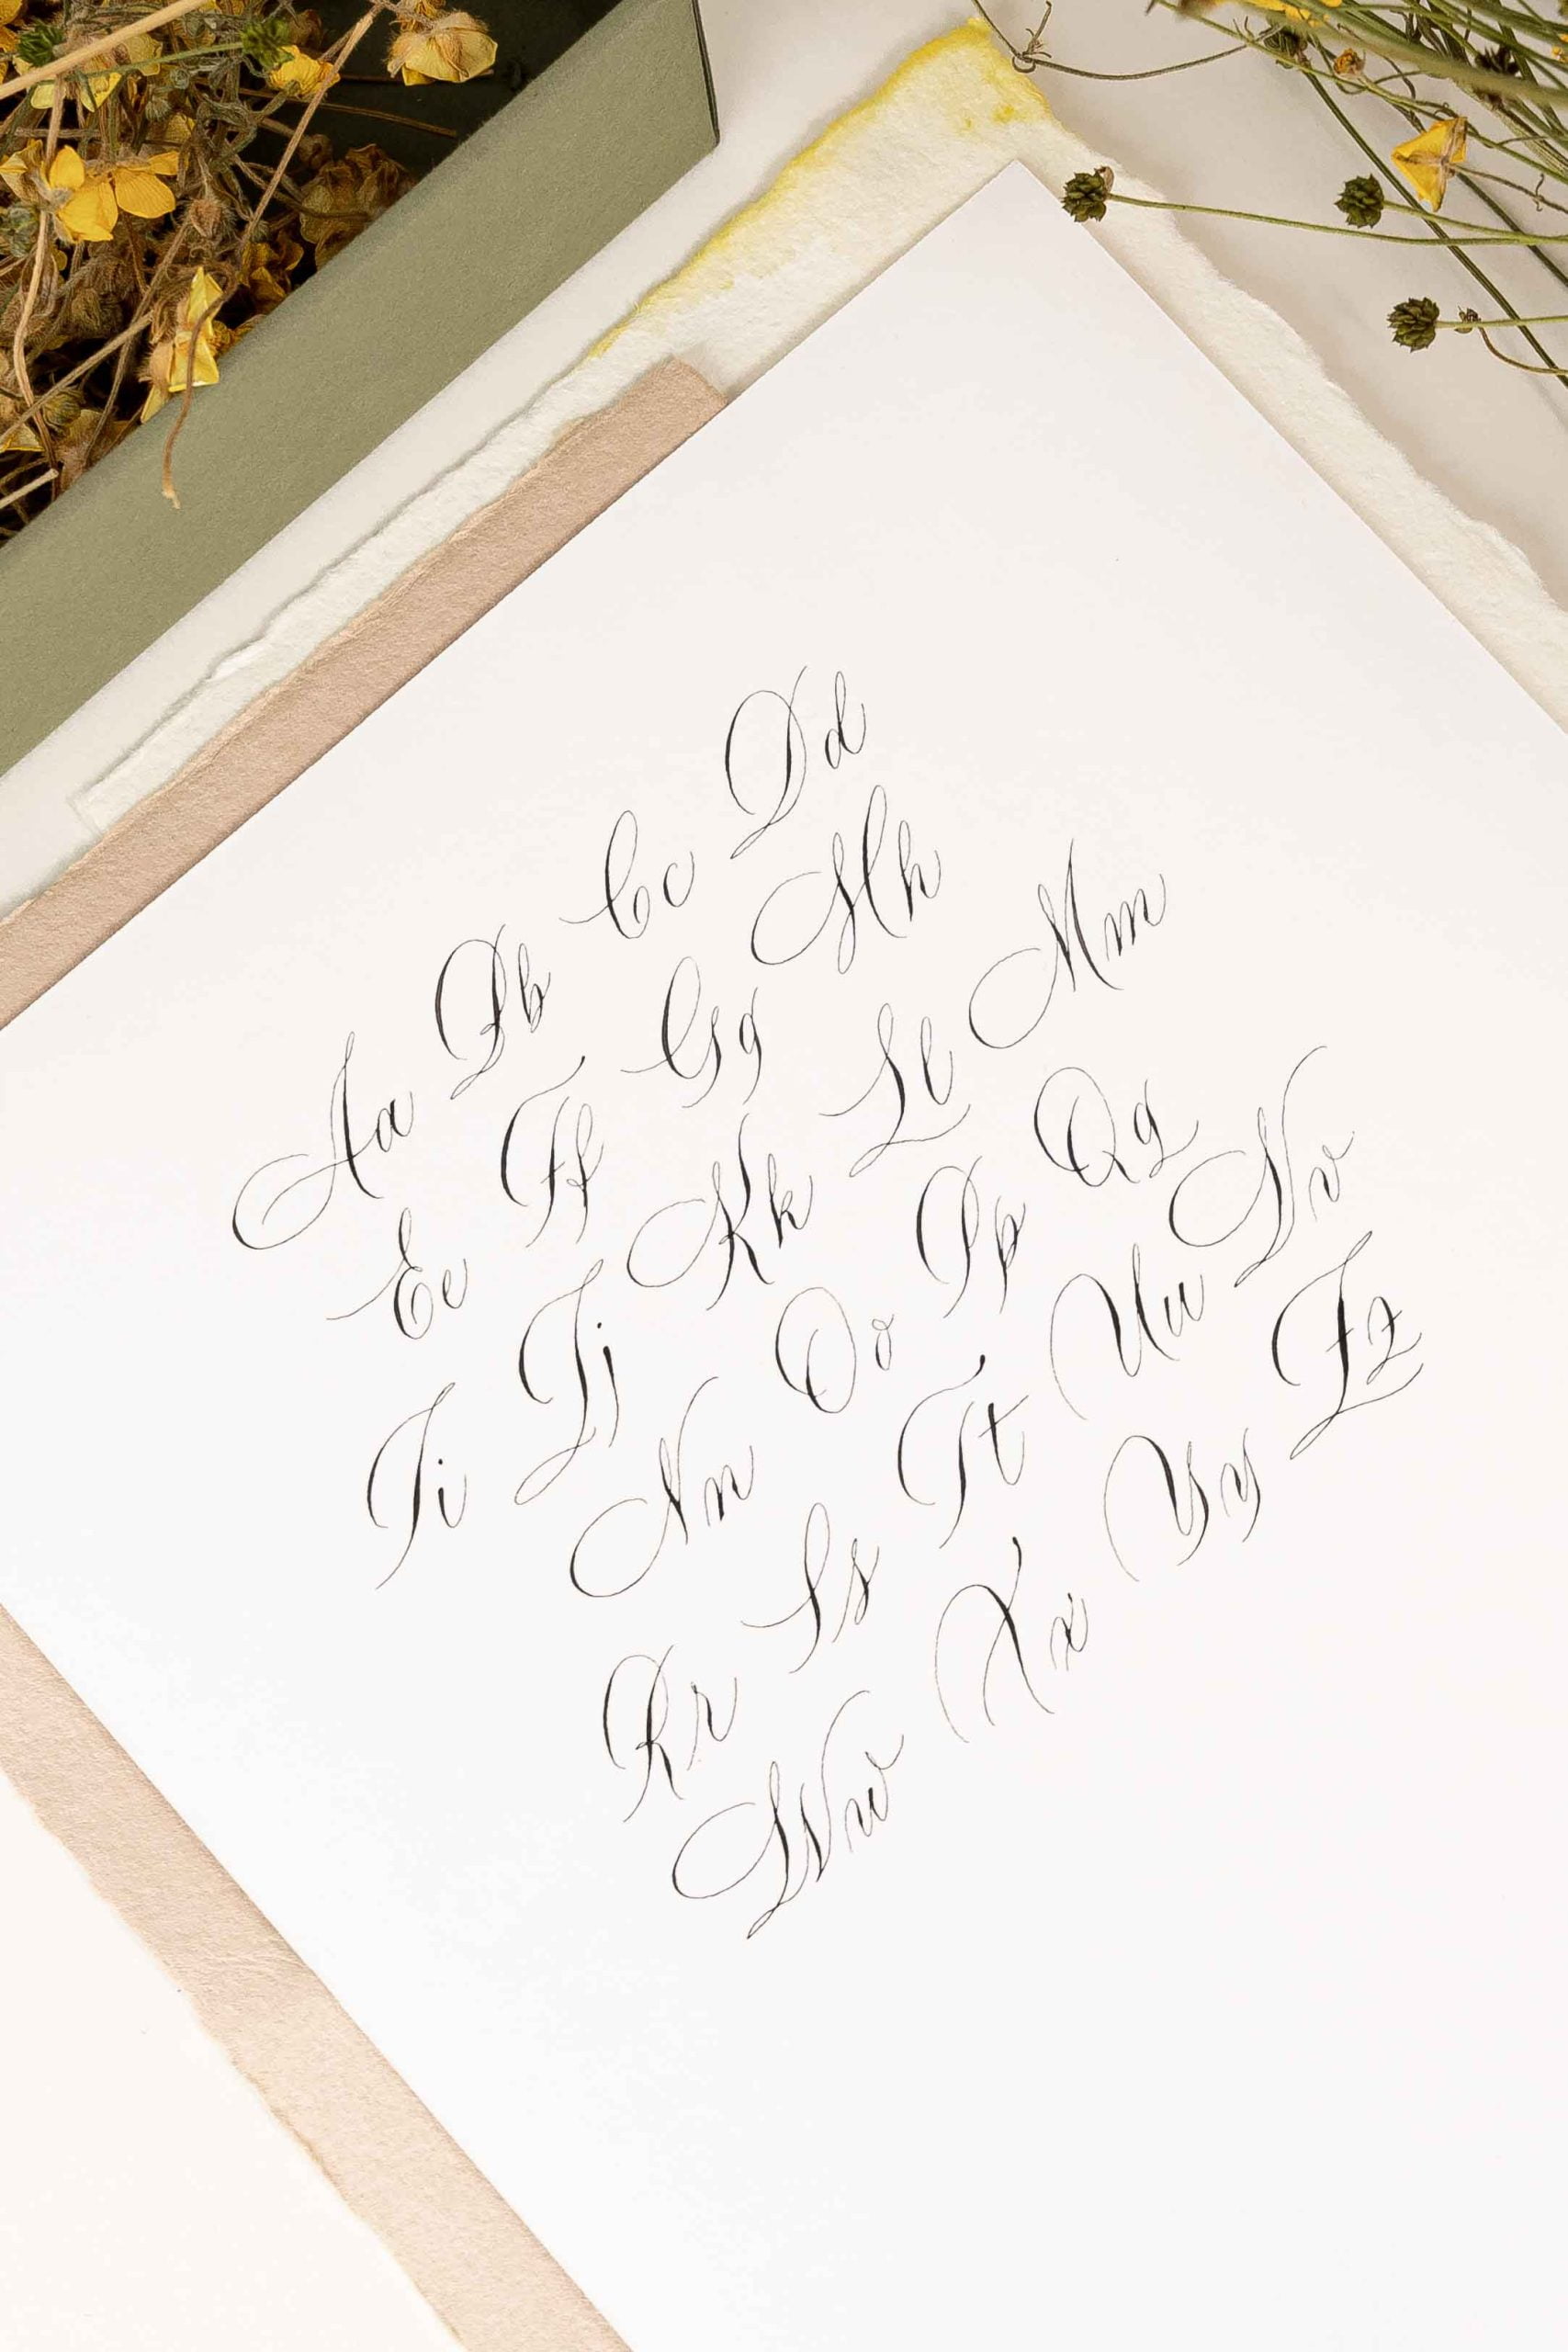 caiet de caligrafie pentru practicarea literelor mici